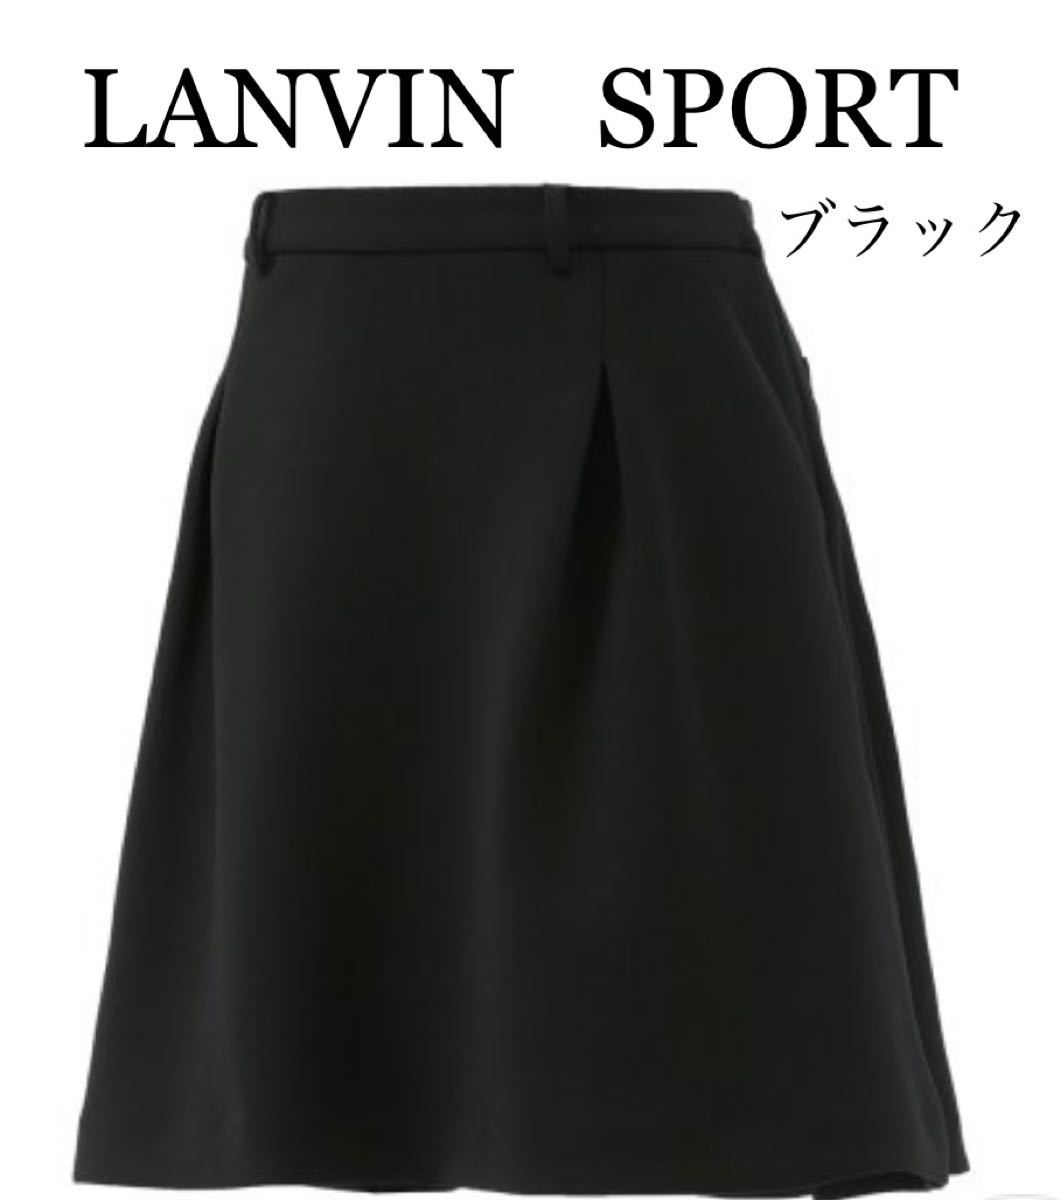 都内で スカート SPORT 新品未使用！LANVIN - ウエア(女性用) - www 